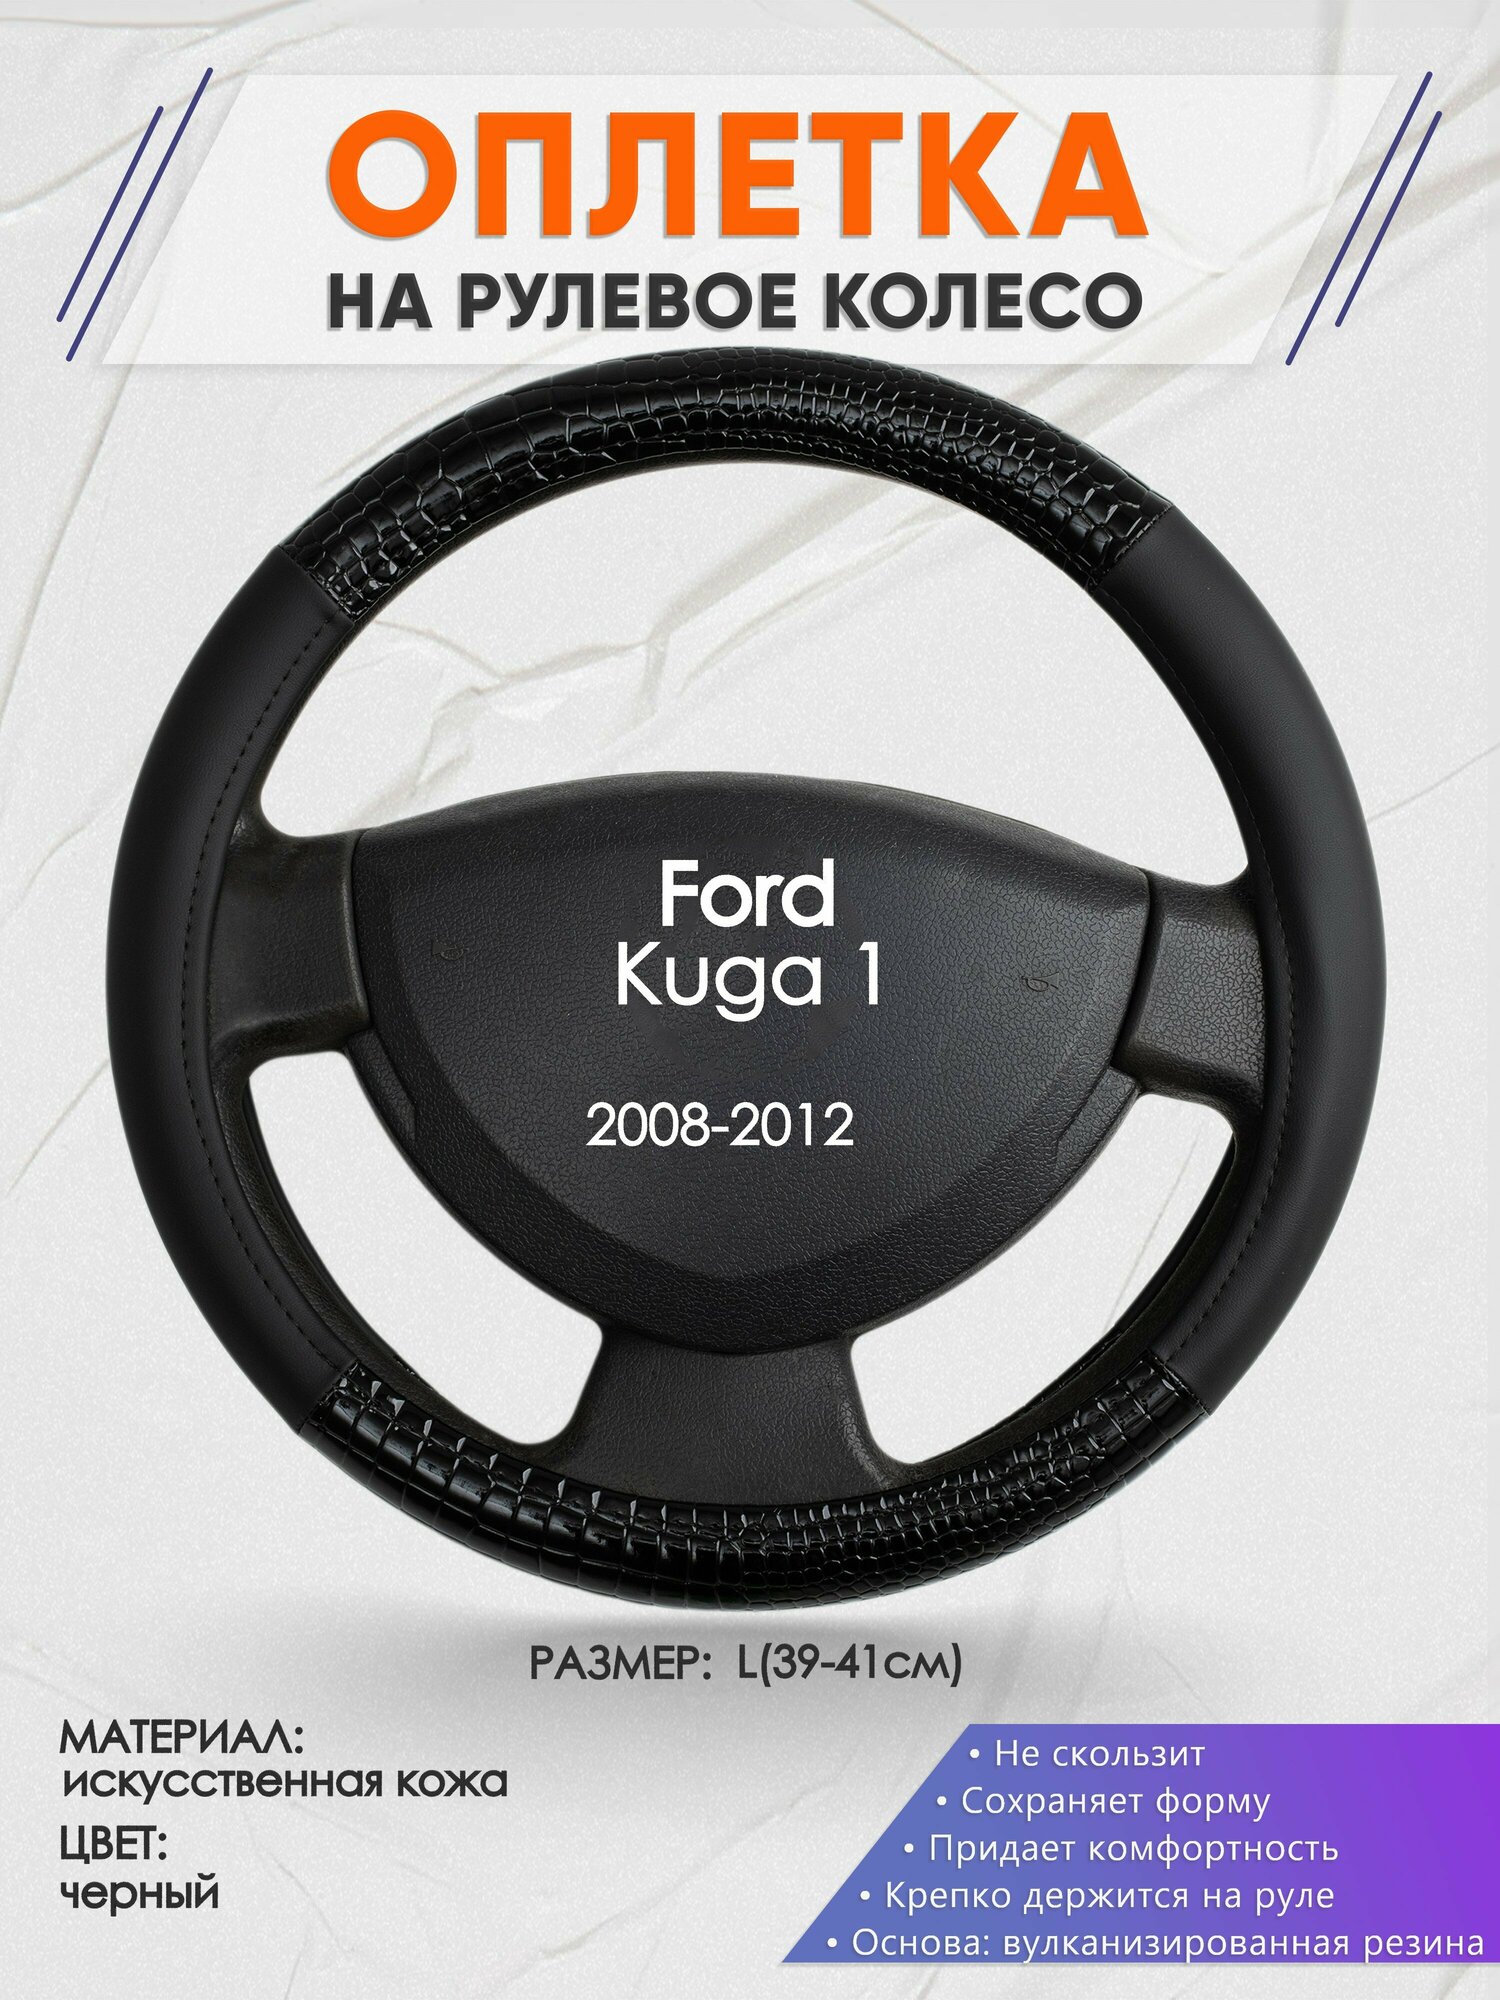 Оплетка на руль для Ford Kuga 1(Форд Куга 1) 2008-2012, L(39-41см), Искусственная кожа 83